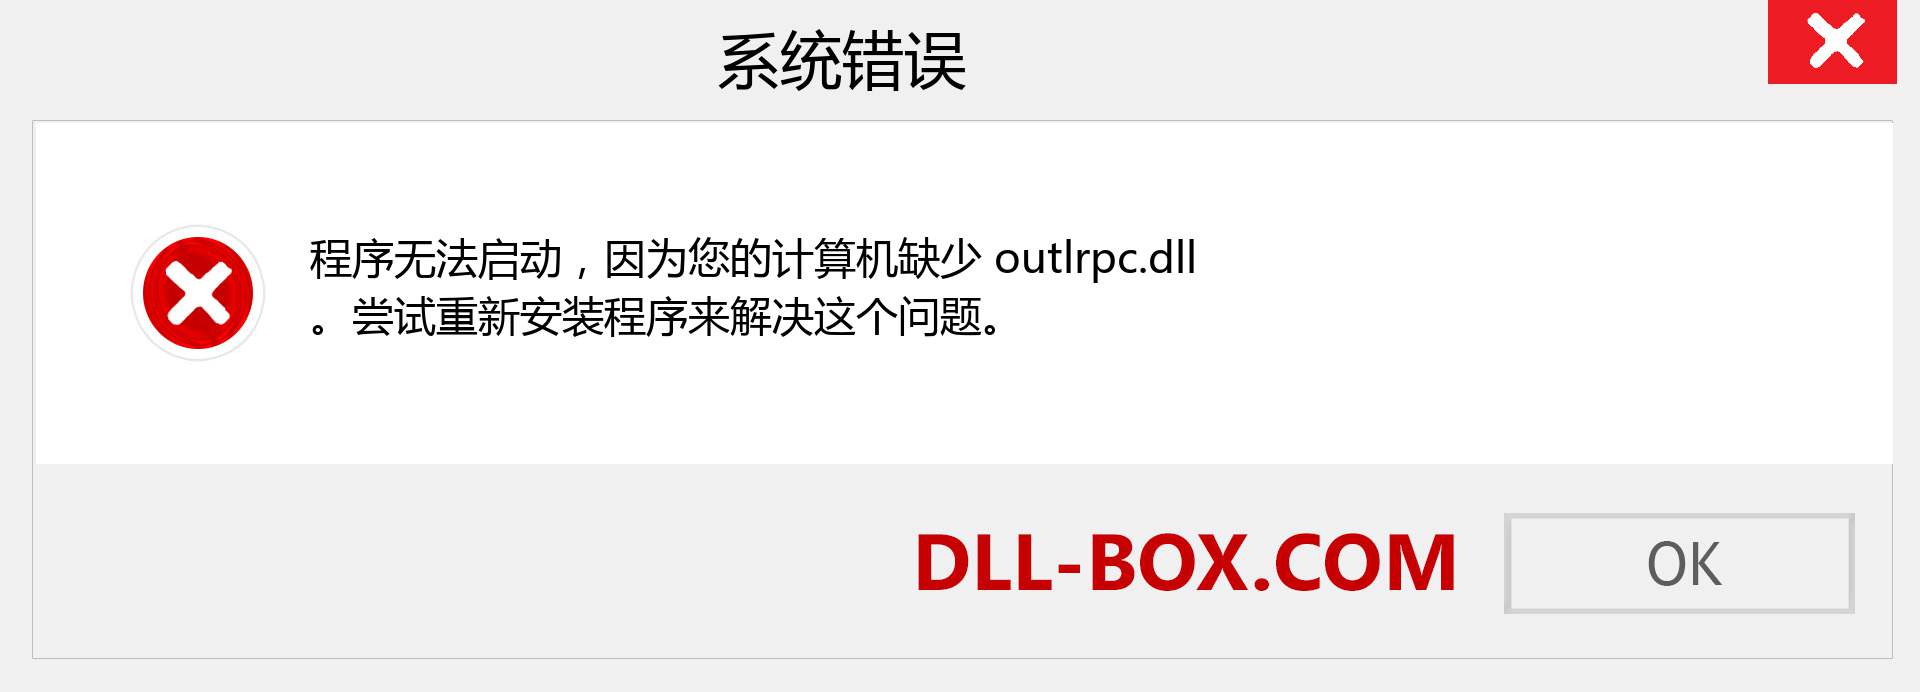 outlrpc.dll 文件丢失？。 适用于 Windows 7、8、10 的下载 - 修复 Windows、照片、图像上的 outlrpc dll 丢失错误